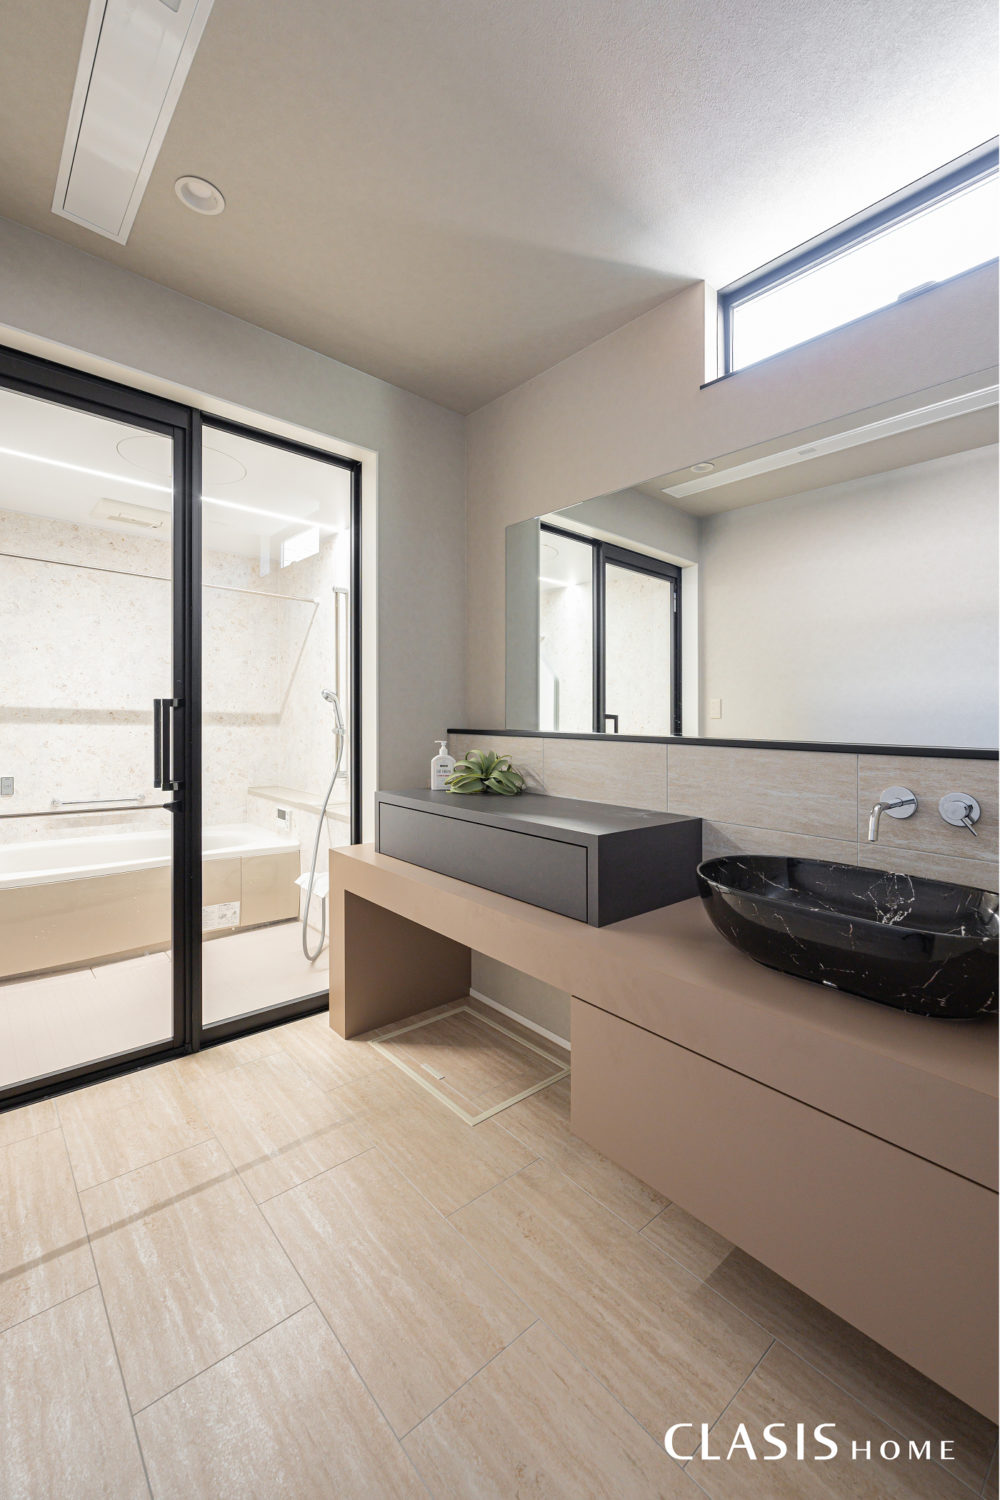 ブラウンベージュの天板にタイルを合わせたデザイン・機能性どちらも併せ持つ造作洗面台。